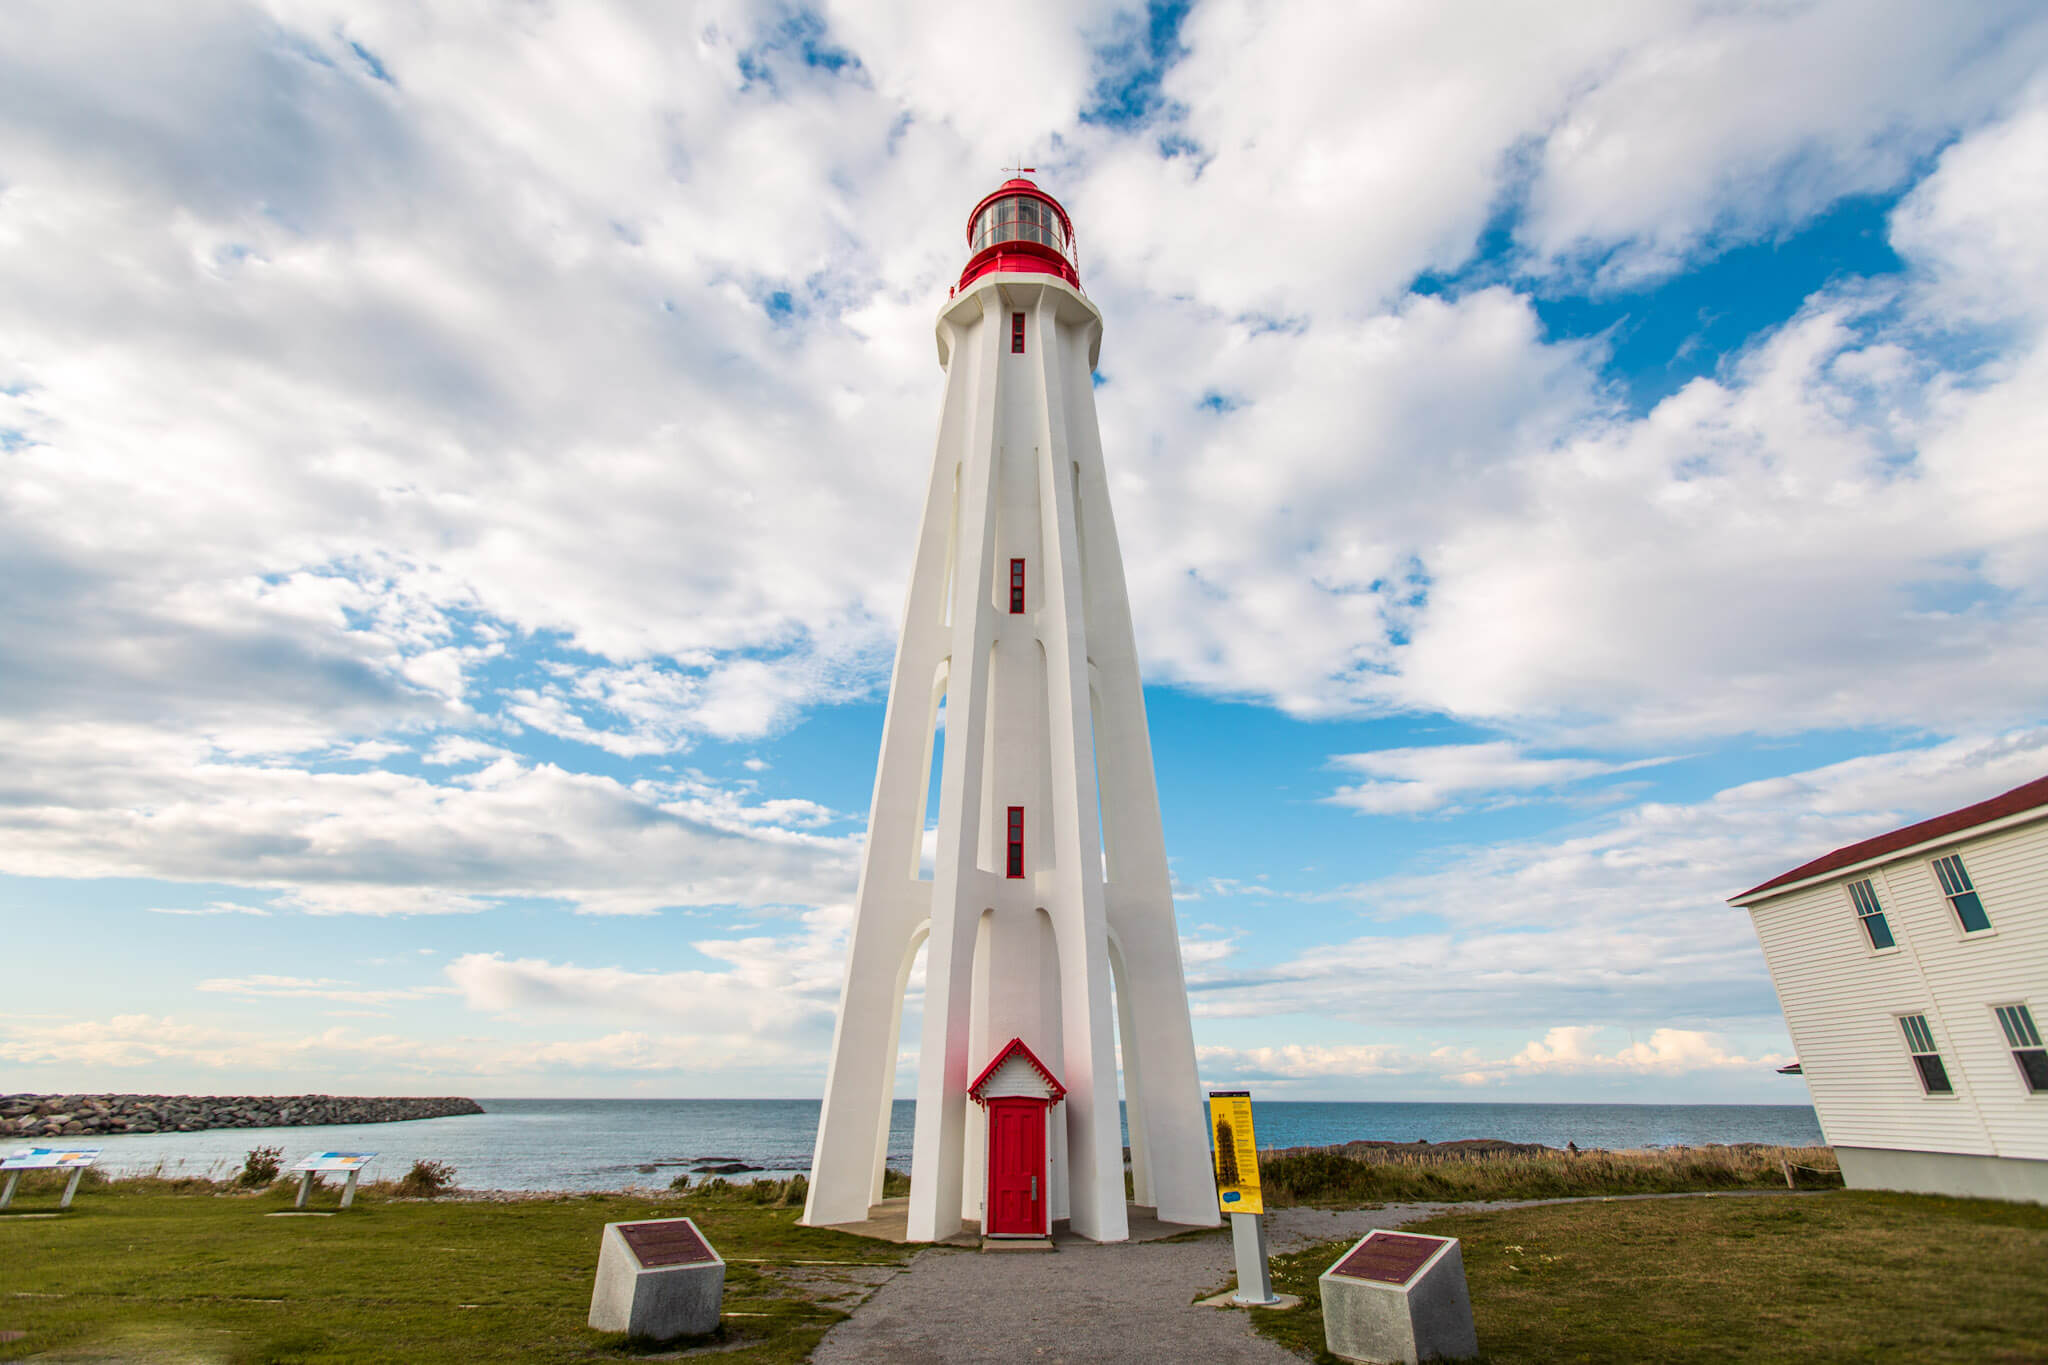 Pointe-au-Père lighthouse